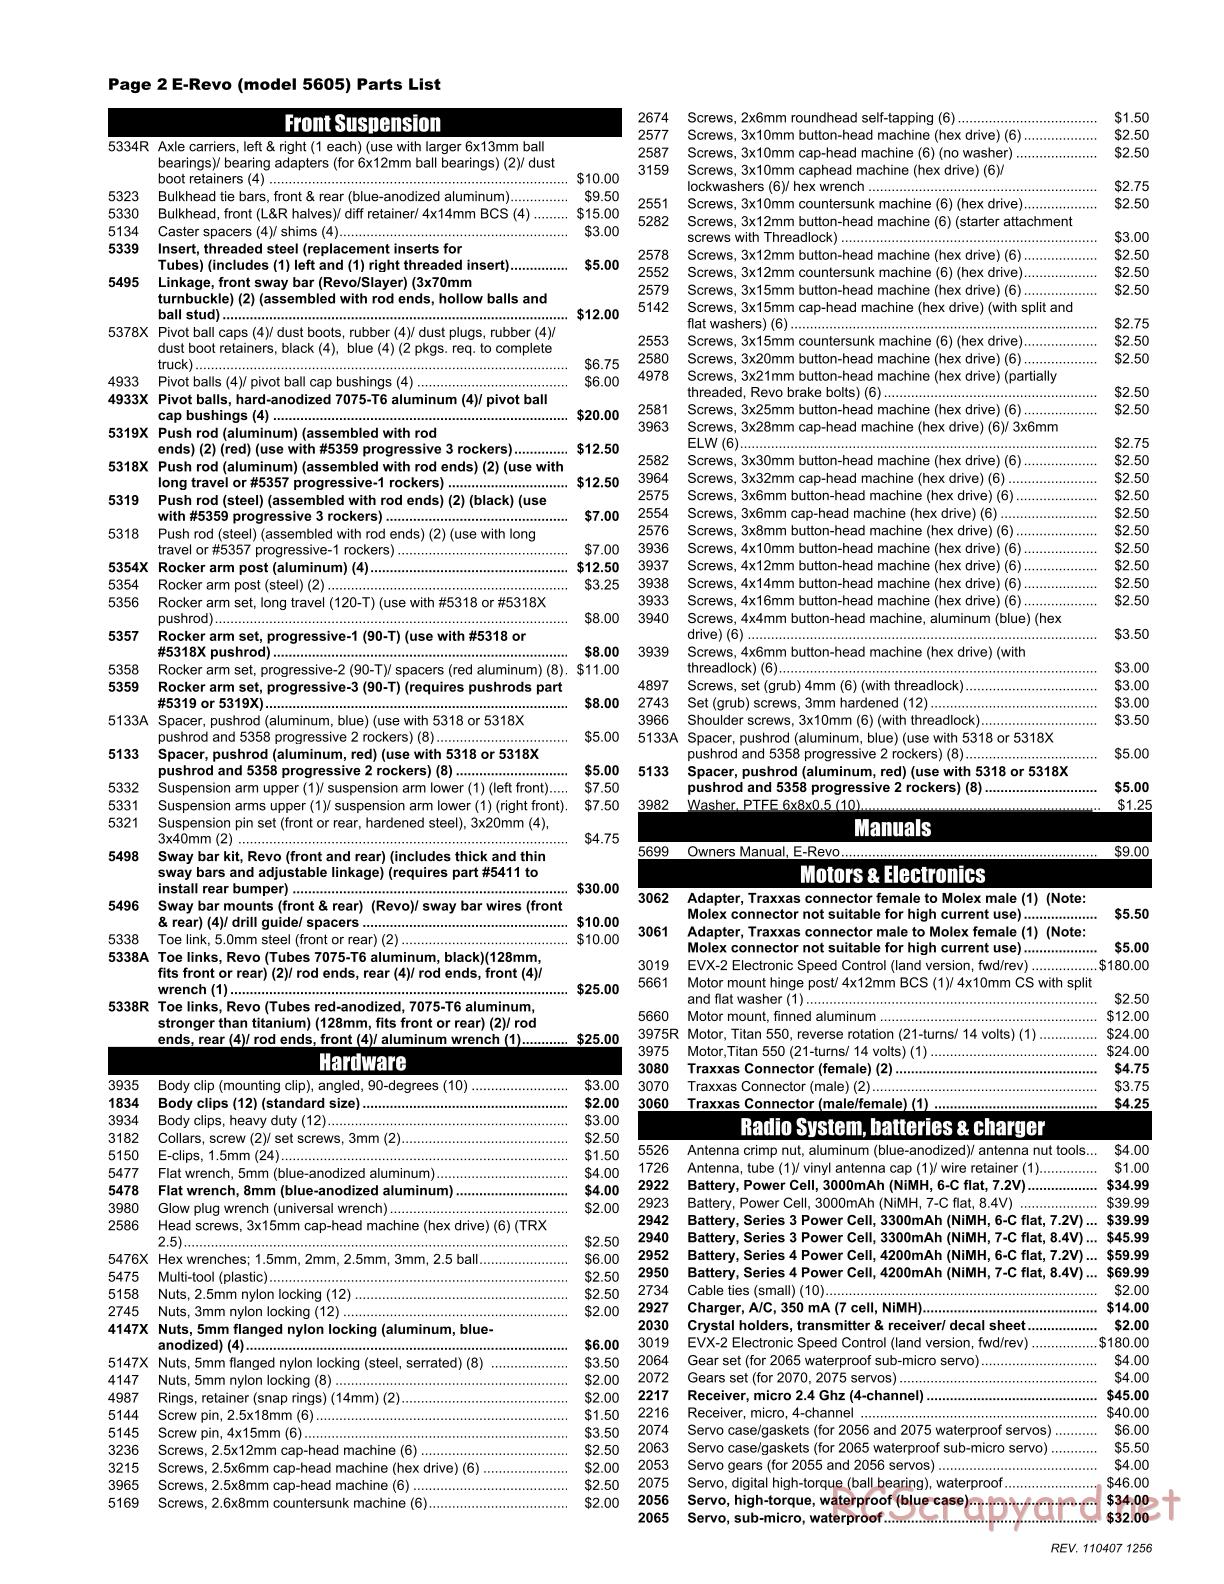 Traxxas - E-Revo (2008) - Parts List - Page 2